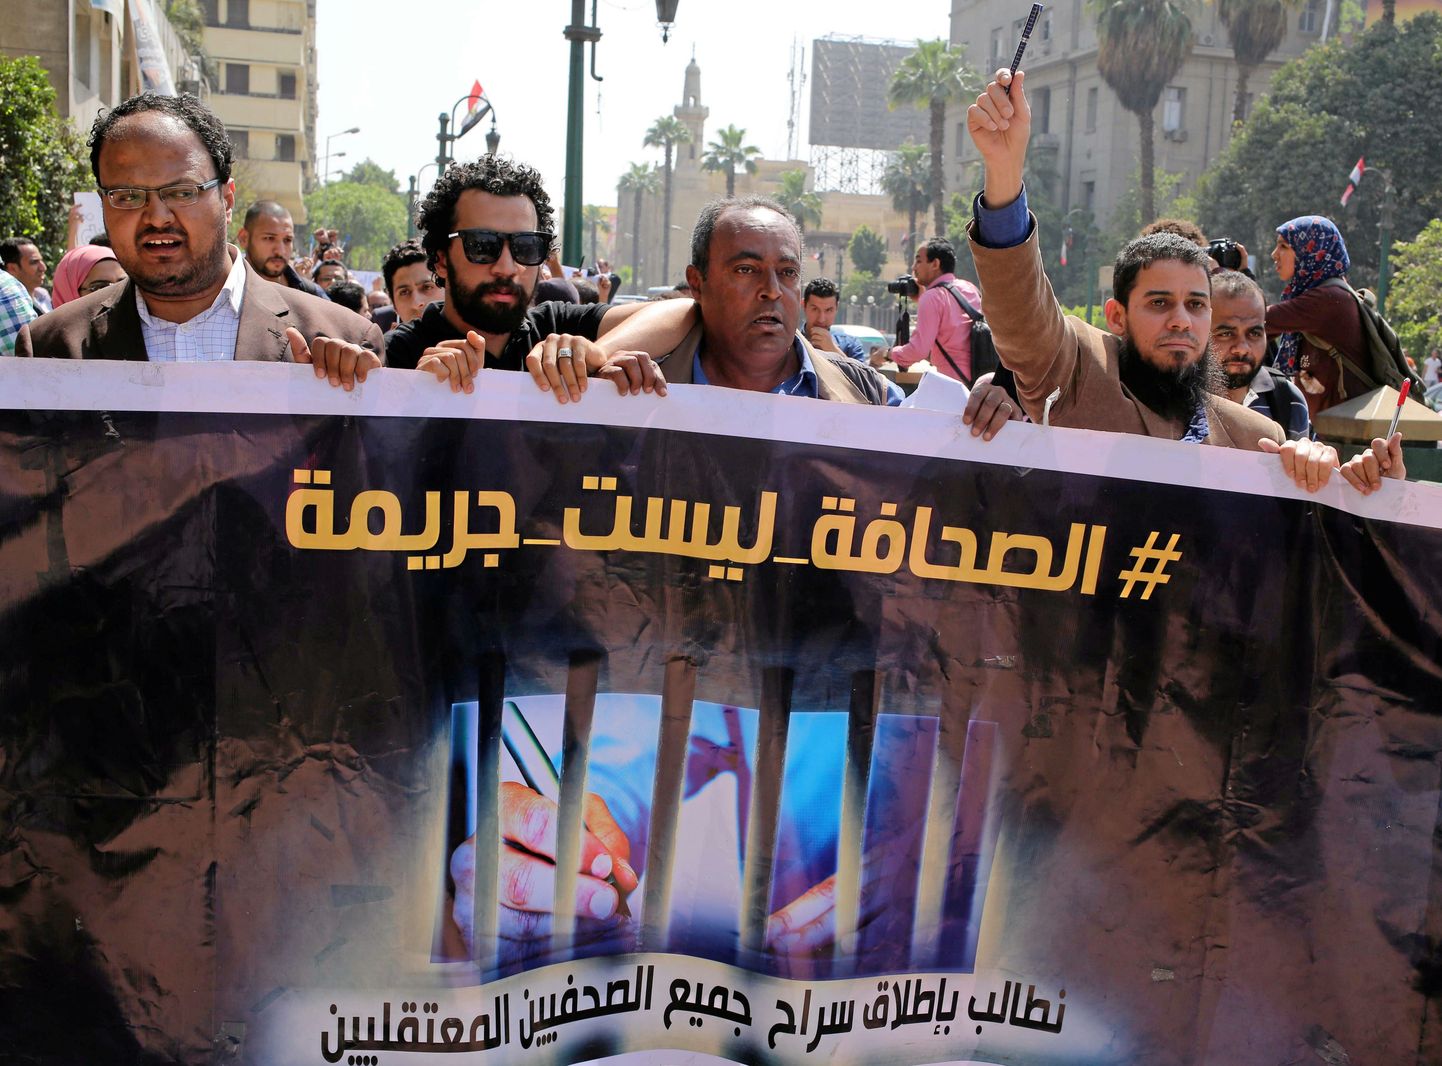 Ajakirjanike meeleavaldus Egiptuse pealinnas Kairos.